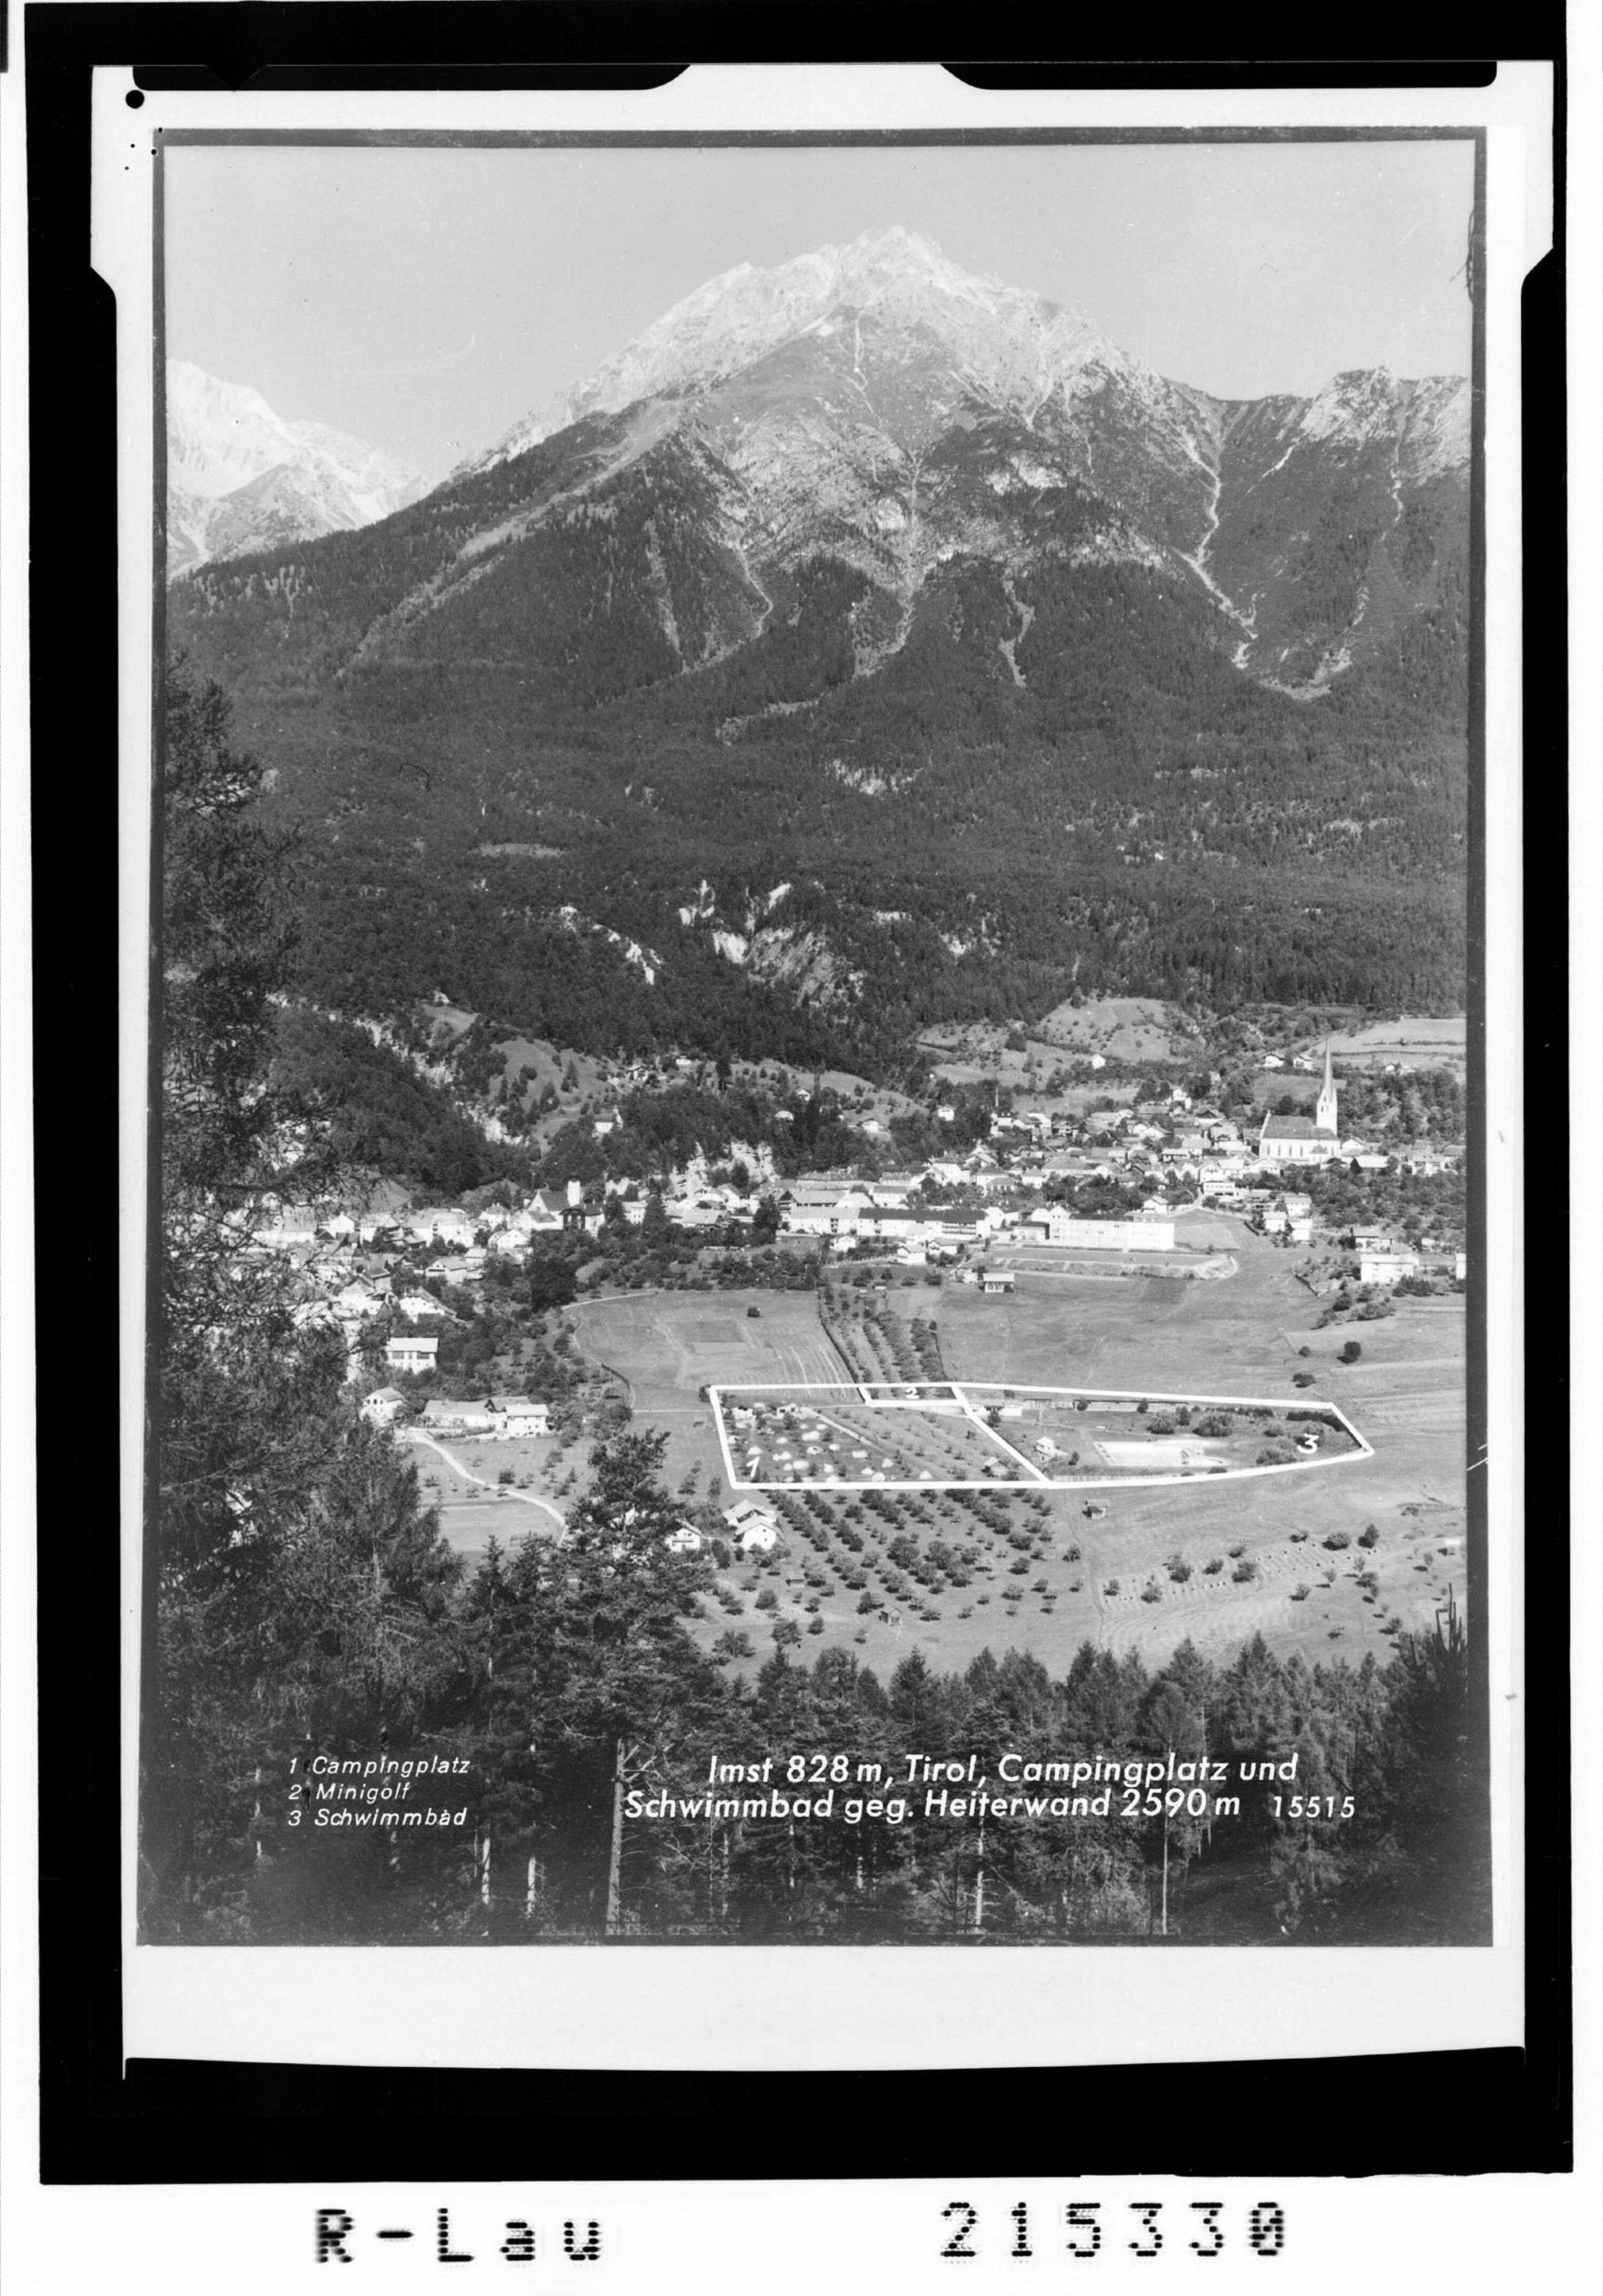 Imst 828 m / Tirol / Campingplatz und Schwimmbad gegen Heiterwand 2590 m></div>


    <hr>
    <div class=